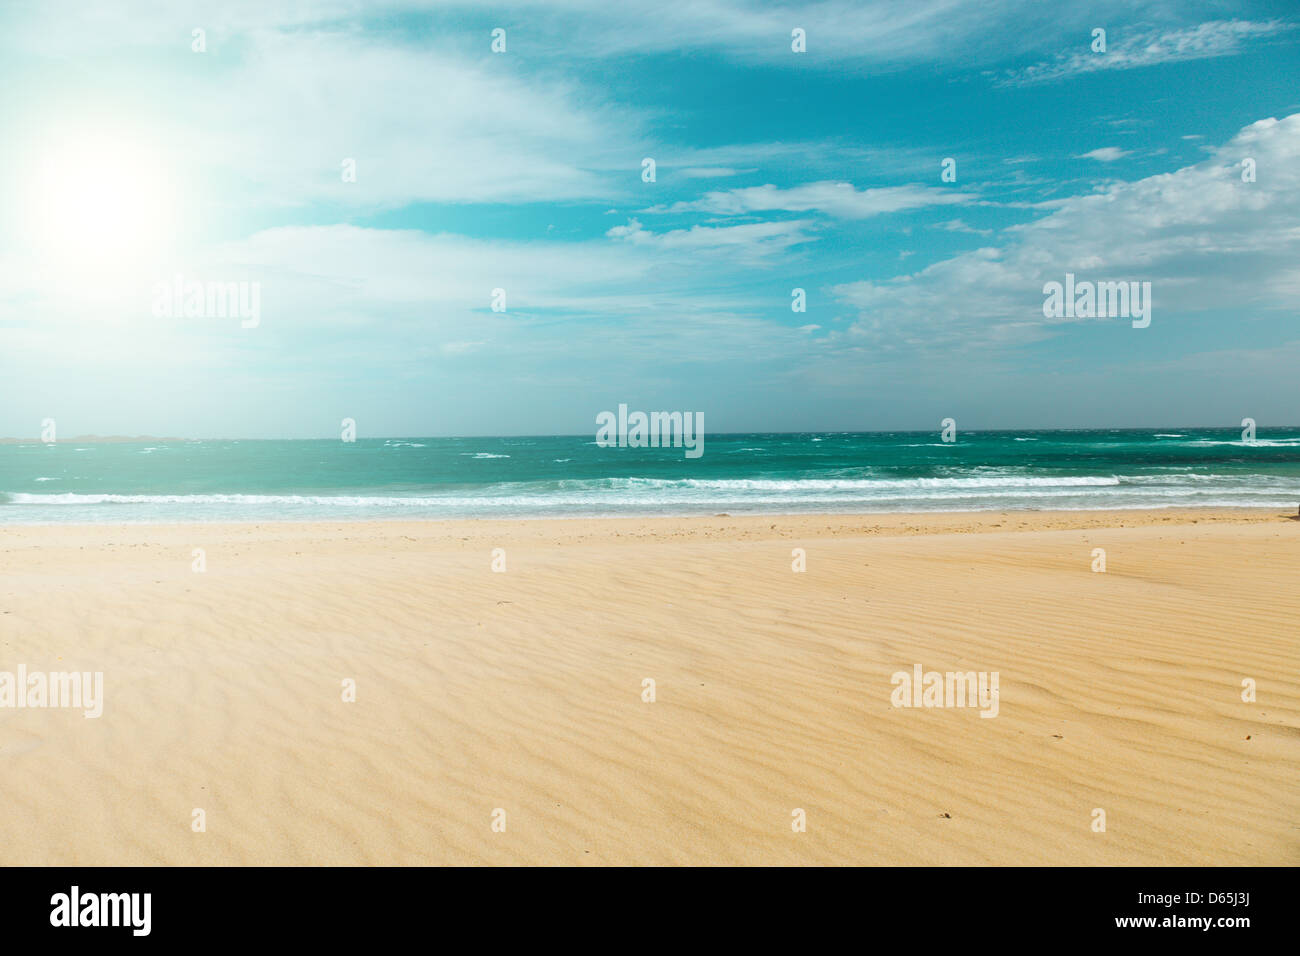 Sandy beach on the Atlantic coast the Canary Islands Stock Photo